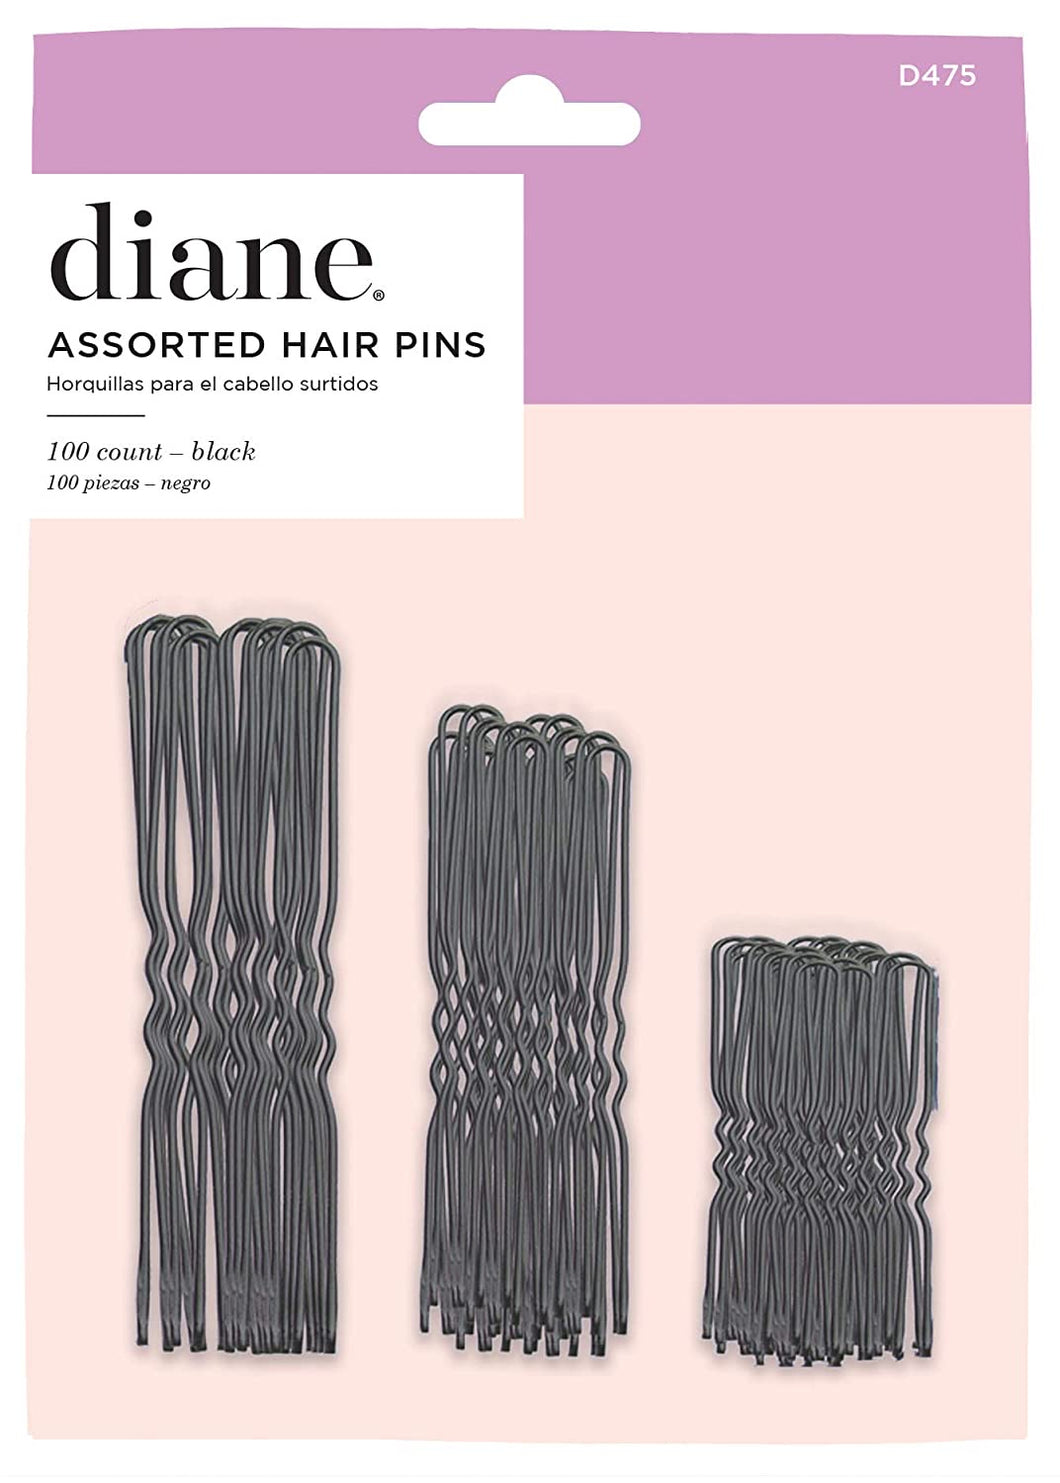 DIANE D475 ASSORTED HAIR PINS